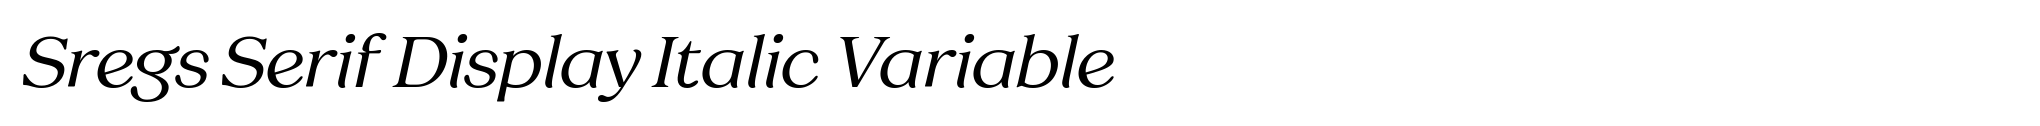 Sregs Serif Display Italic Variable image